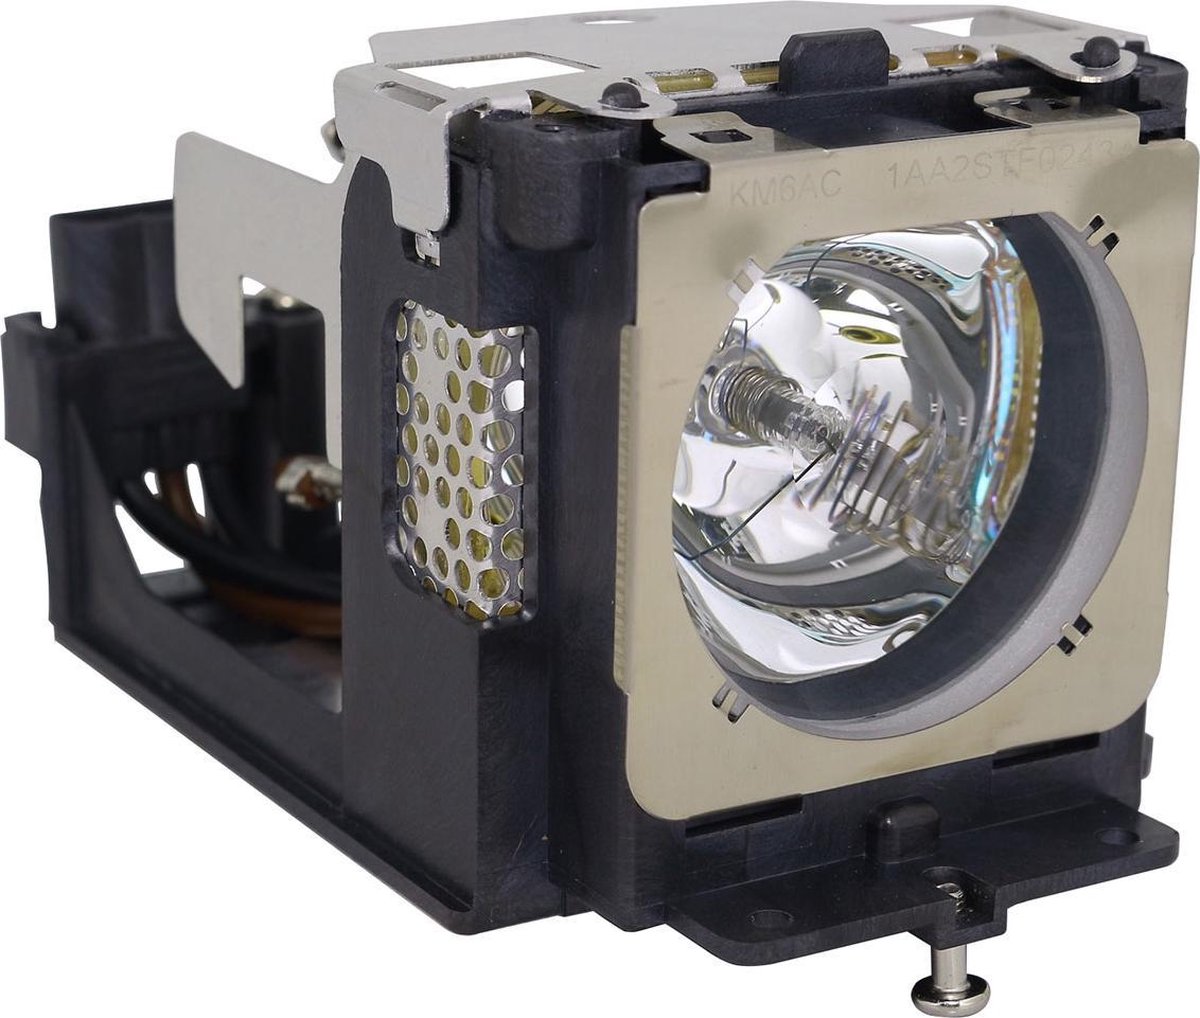 Beamerlamp geschikt voor de SANYO PLC-XL51A beamer, lamp code POA-LMP121 / 610-337-9937. Bevat originele NSHA lamp, prestaties gelijk aan origineel.